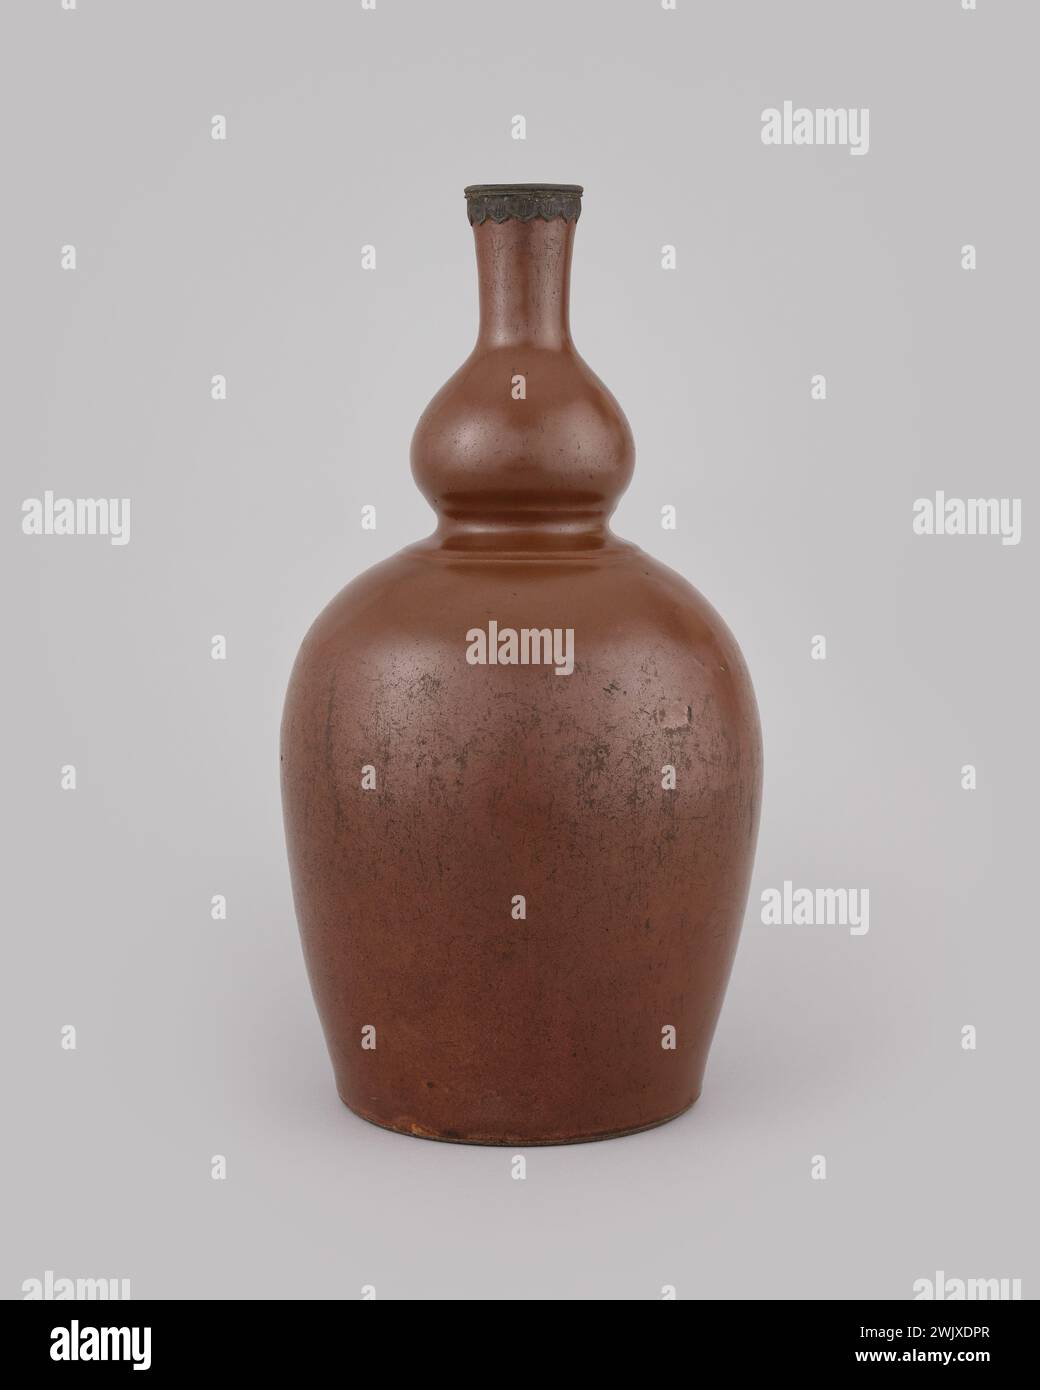 Anonyme Vase in Form eines Doppelkürbis (gebräuchlicher Name), 1700. Sandstein Sandstein glänzend braun. Cernuschi Museum, Asienmuseum in der Stadt Paris. Stockfoto